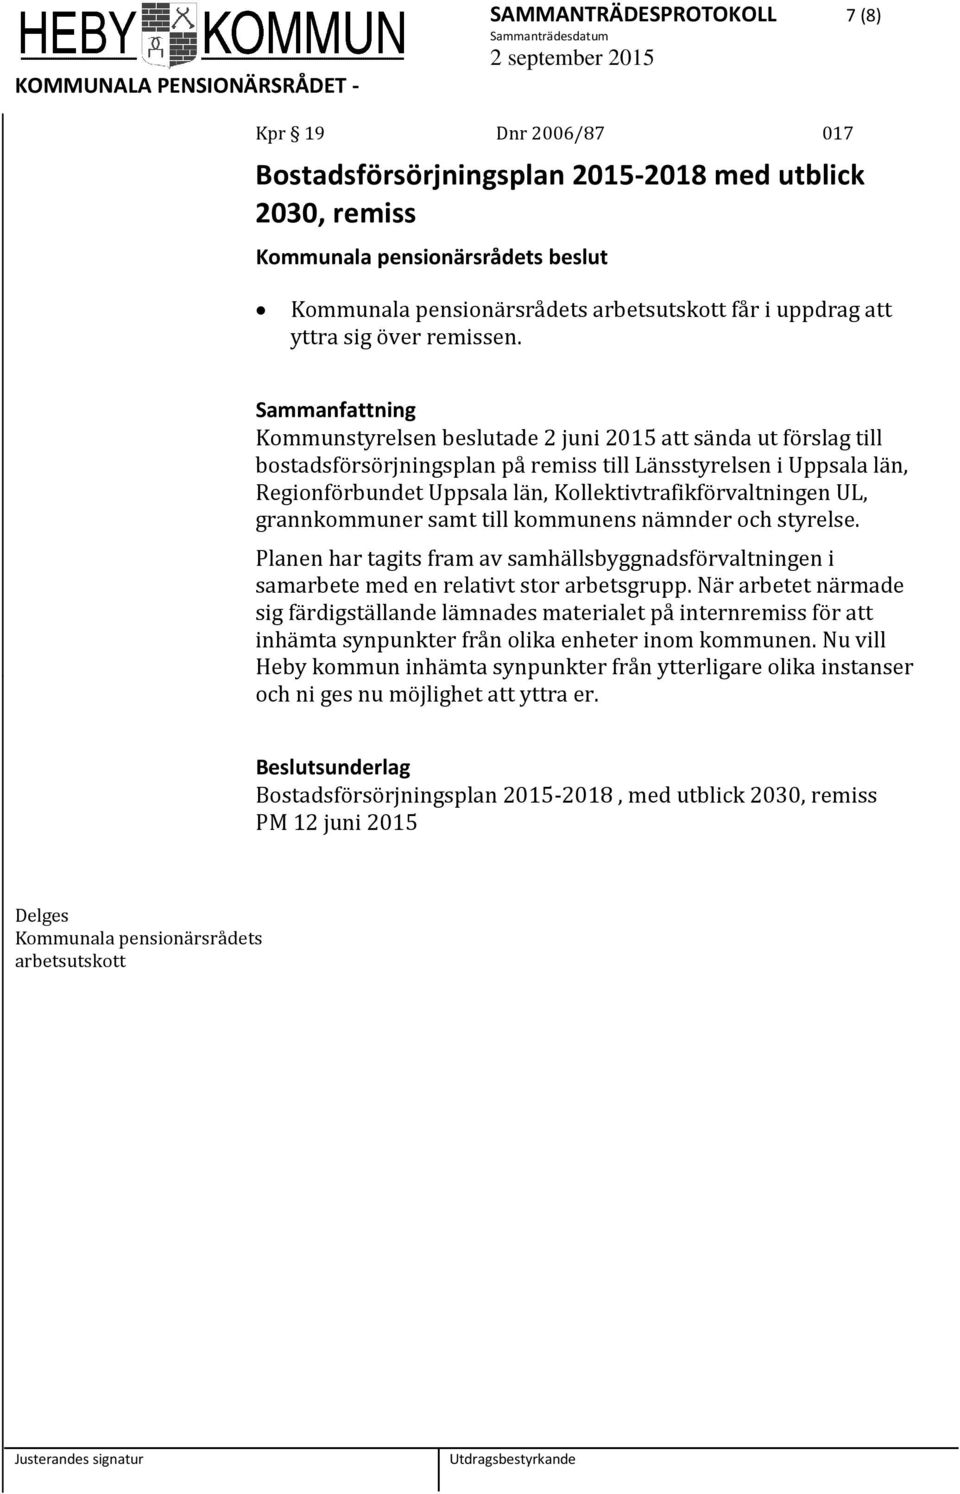 Kommunstyrelsen beslutade 2 juni 2015 att sända ut förslag till bostadsförsörjningsplan på remiss till Länsstyrelsen i Uppsala län, Regionförbundet Uppsala län, Kollektivtrafikförvaltningen UL,